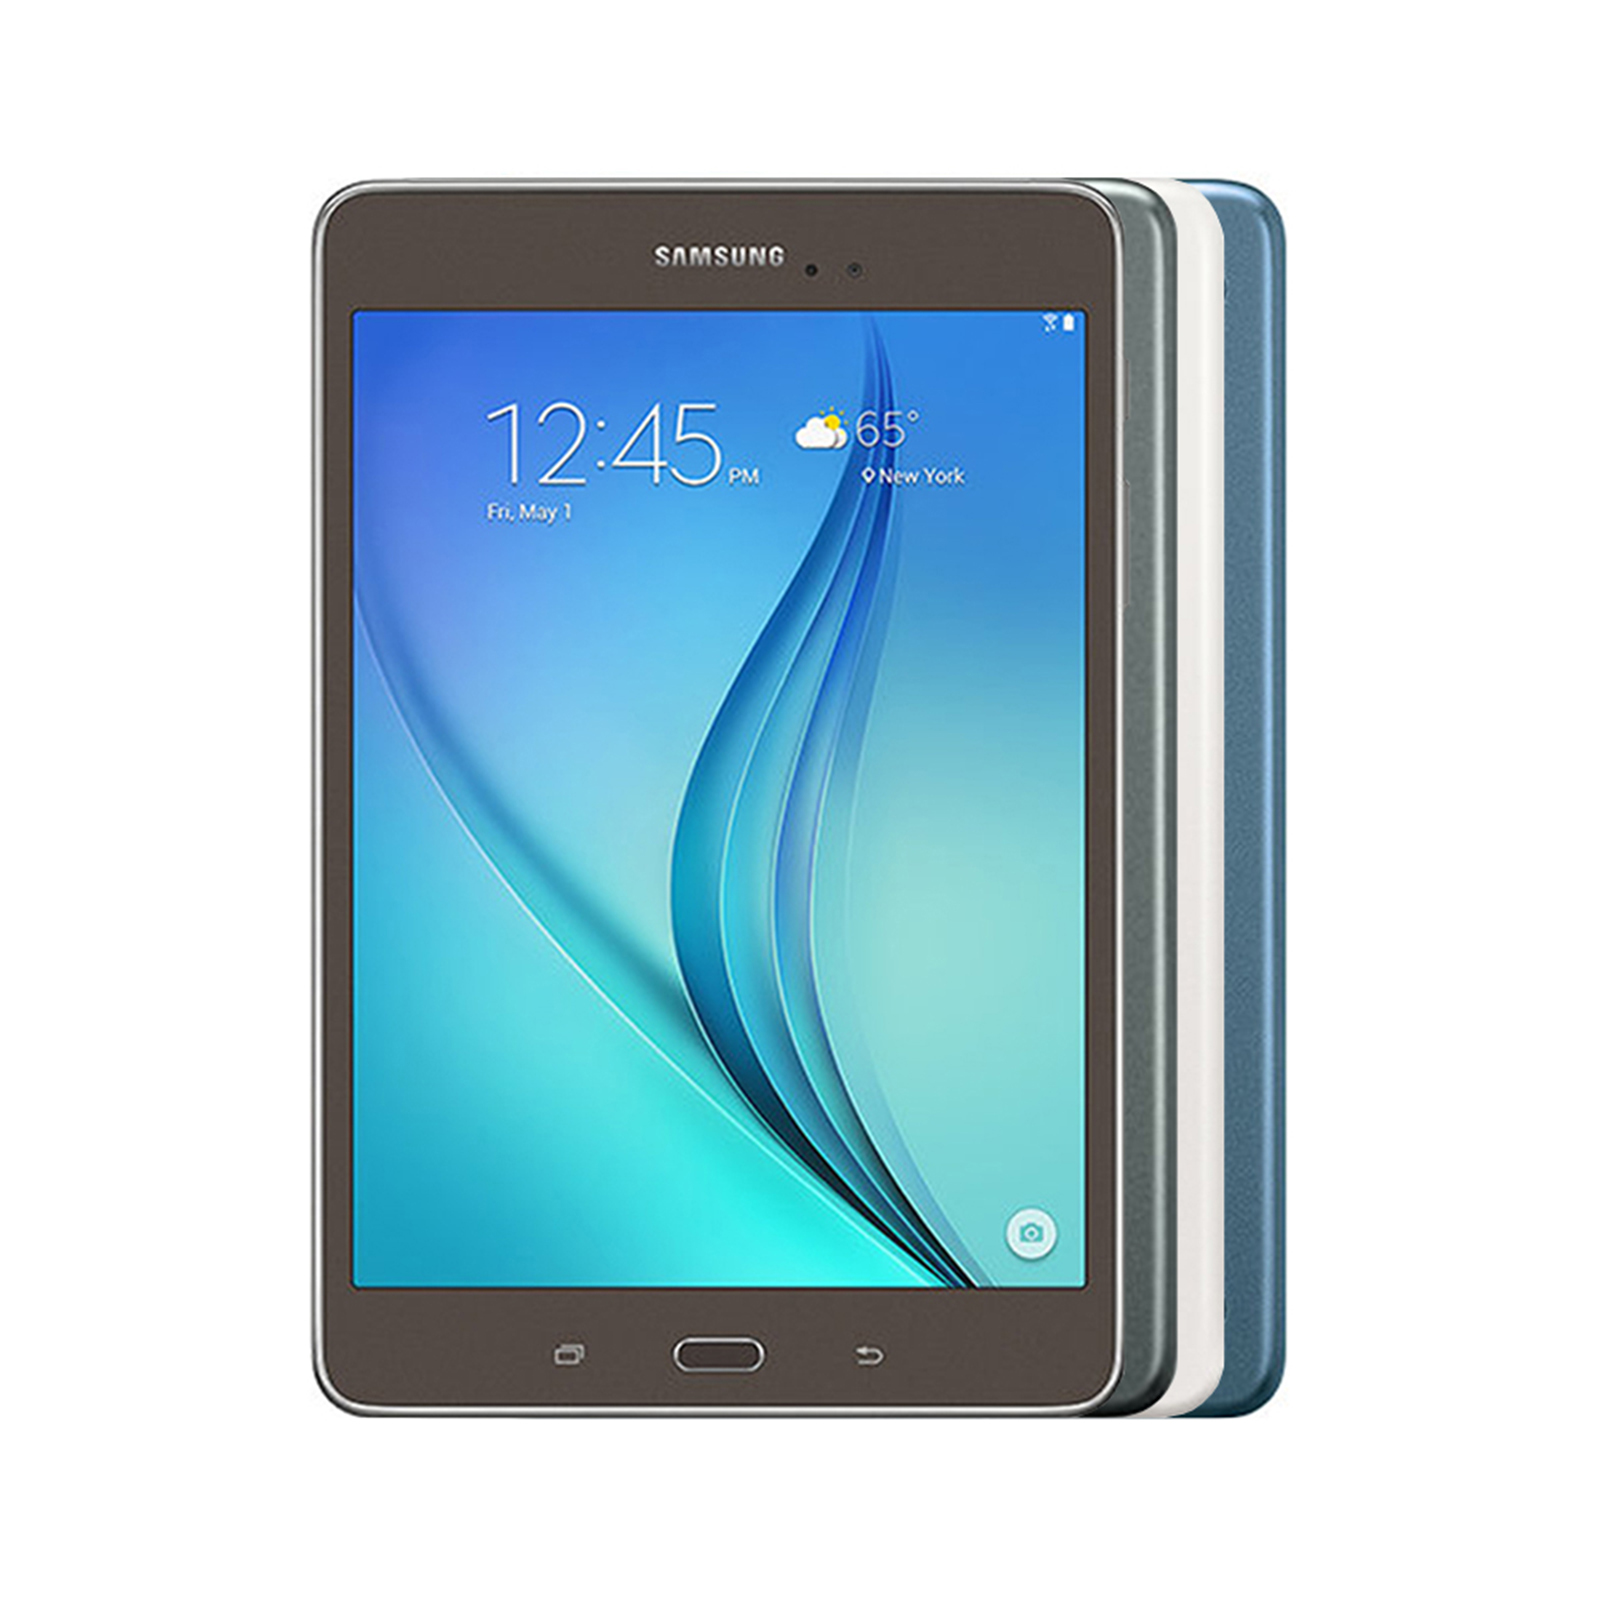 Samsung Galaxy Tab A 8.0 2015 - Good Condition